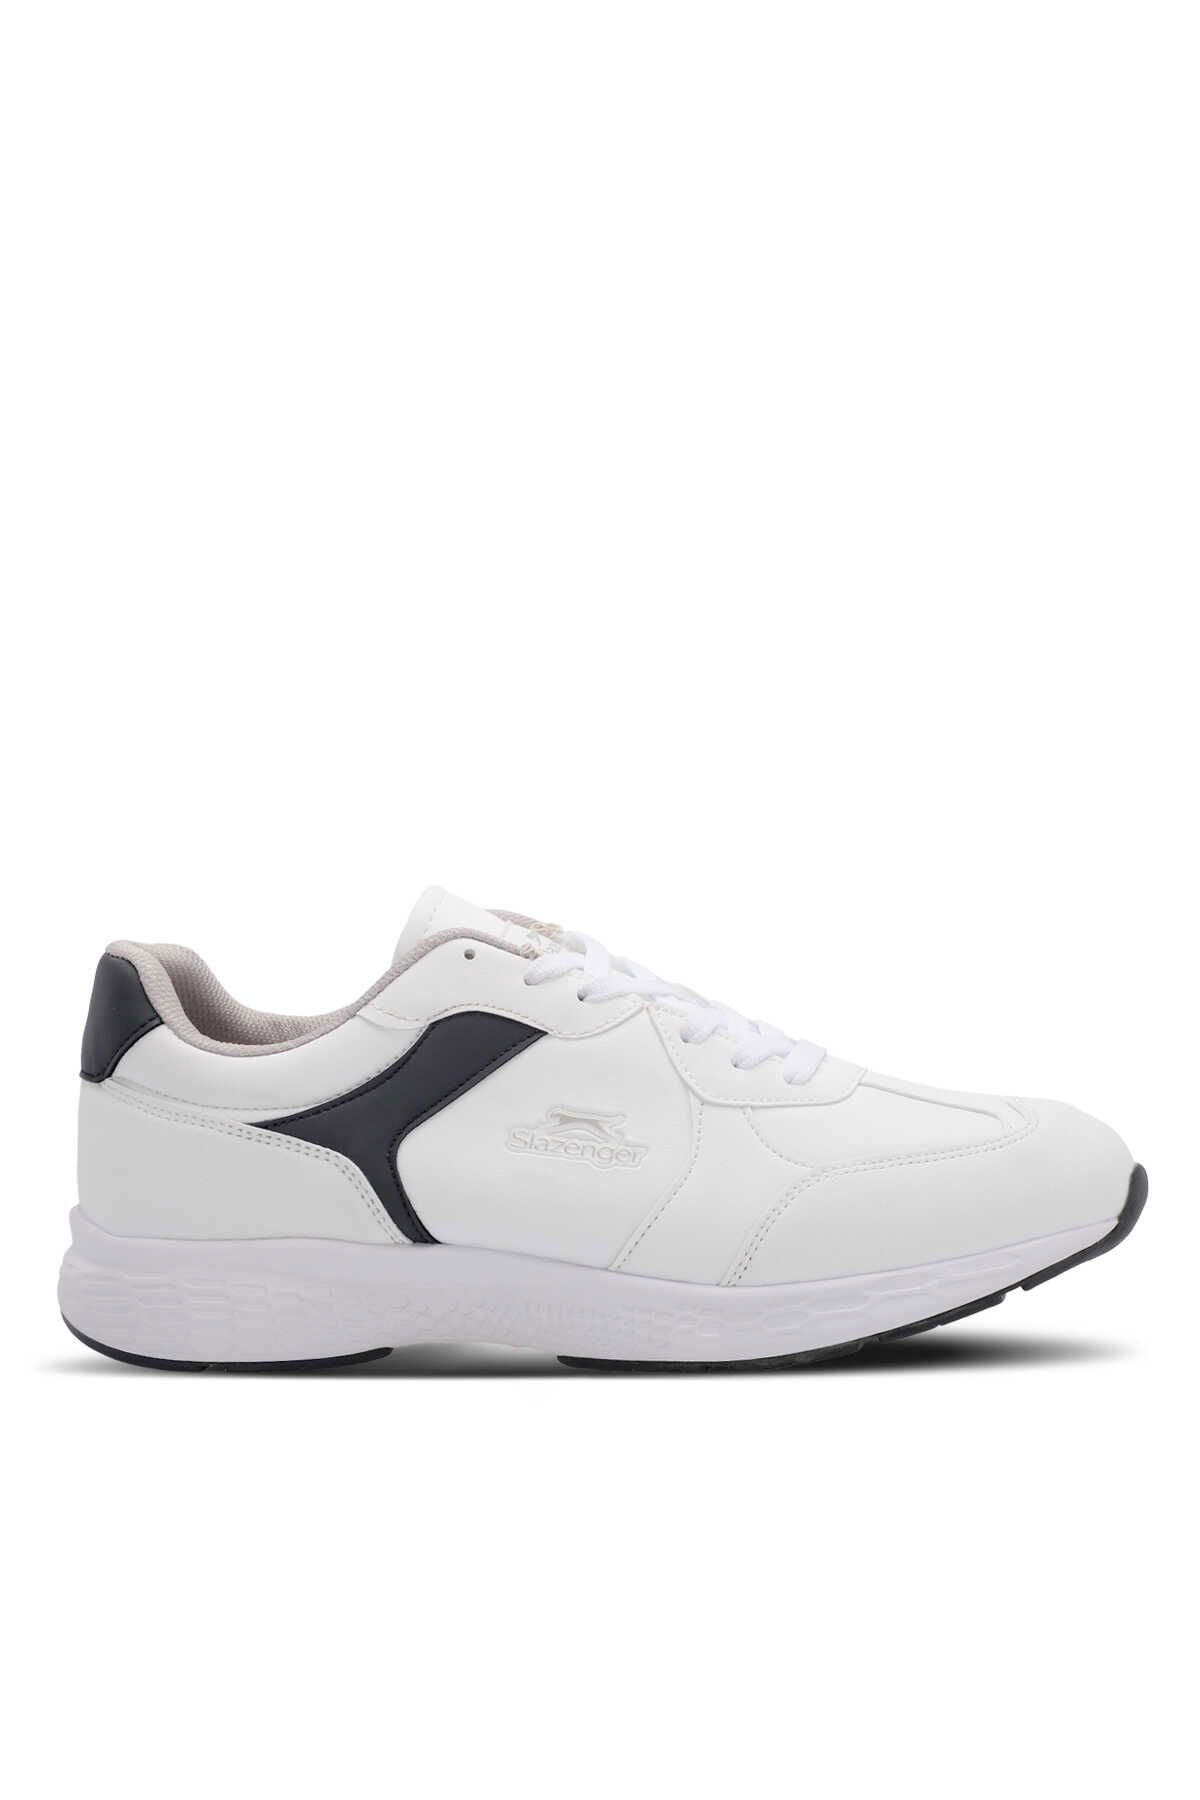 Slazenger - Slazenger MARINE I Erkek Sneaker Ayakkabı Beyaz